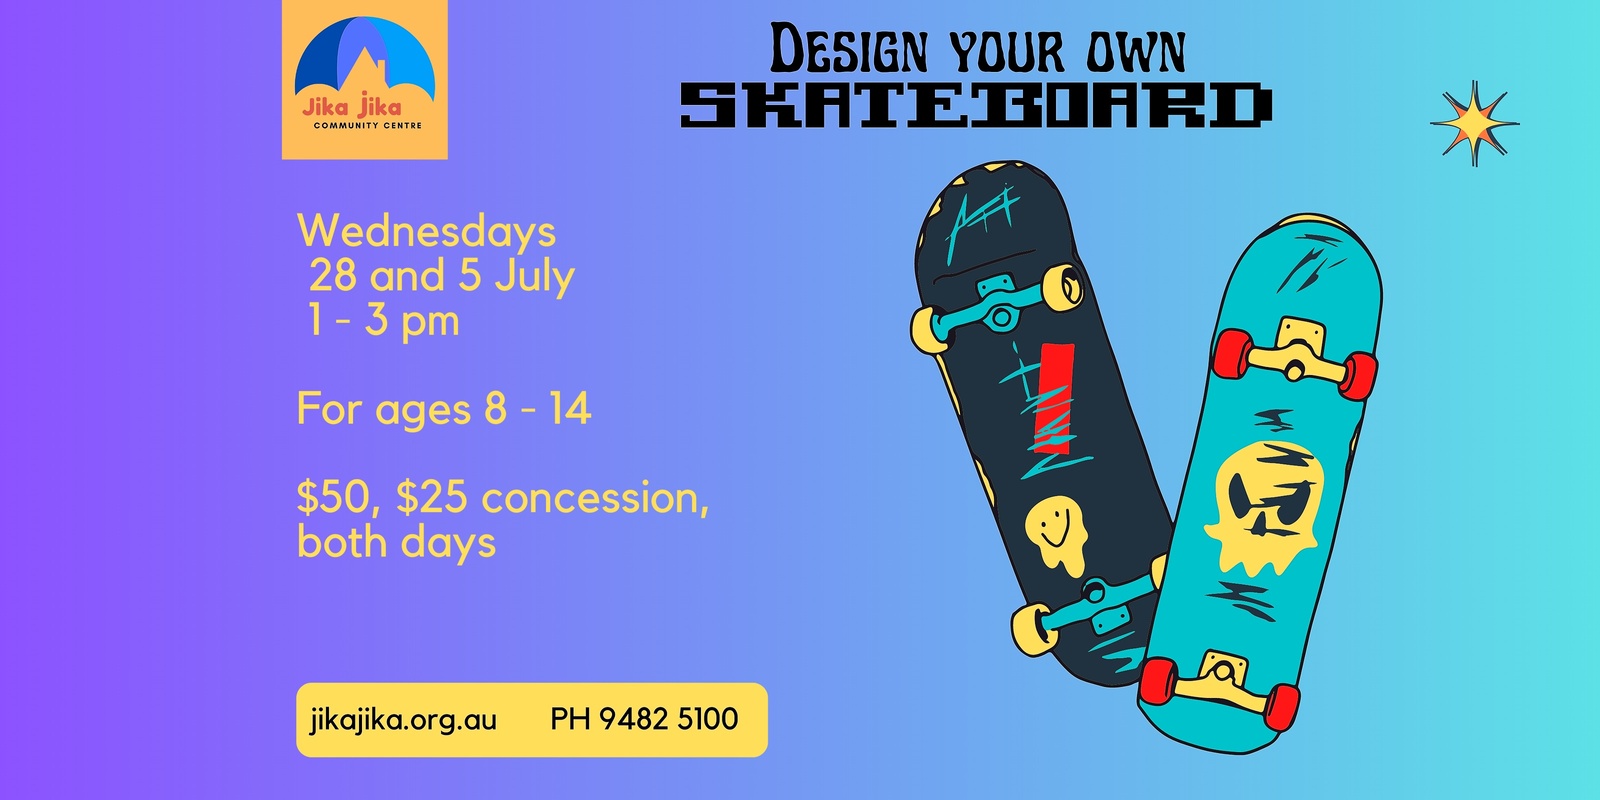 Banner image for Design Your Own Skateboard workshops